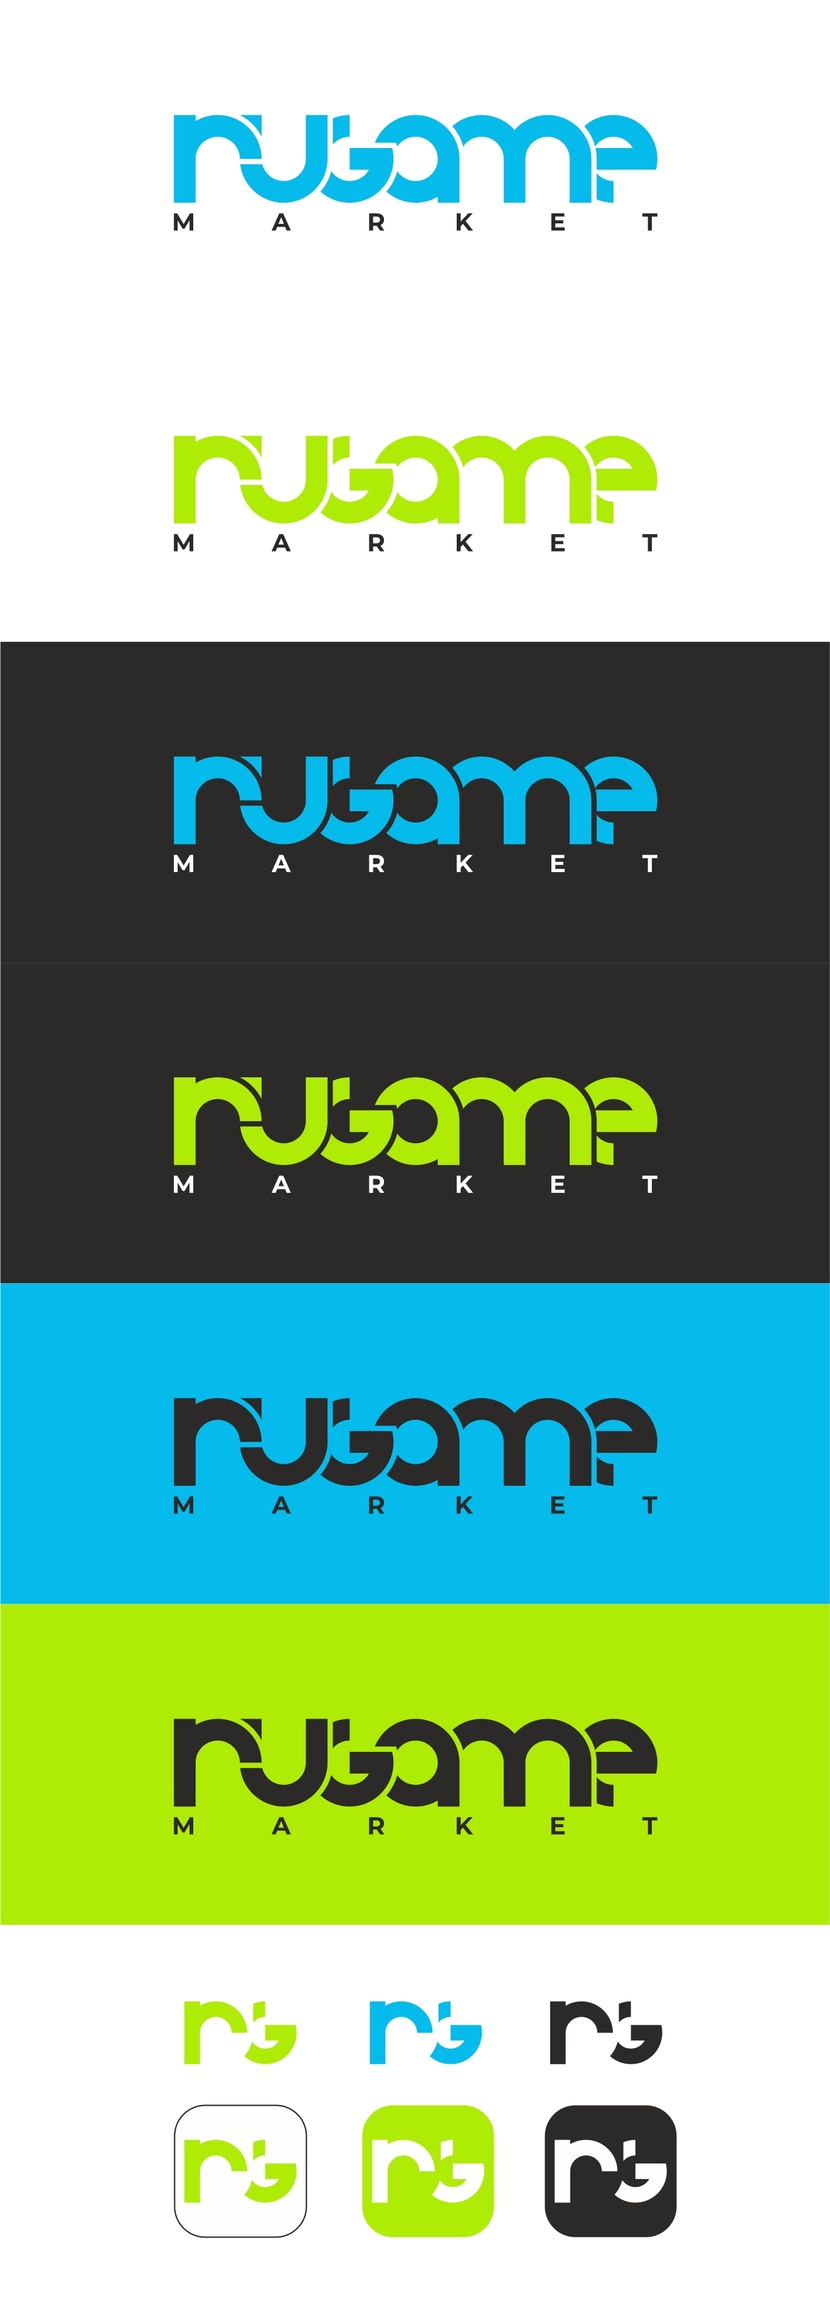 .... - Логотип для маркетплейса цифровых товаров